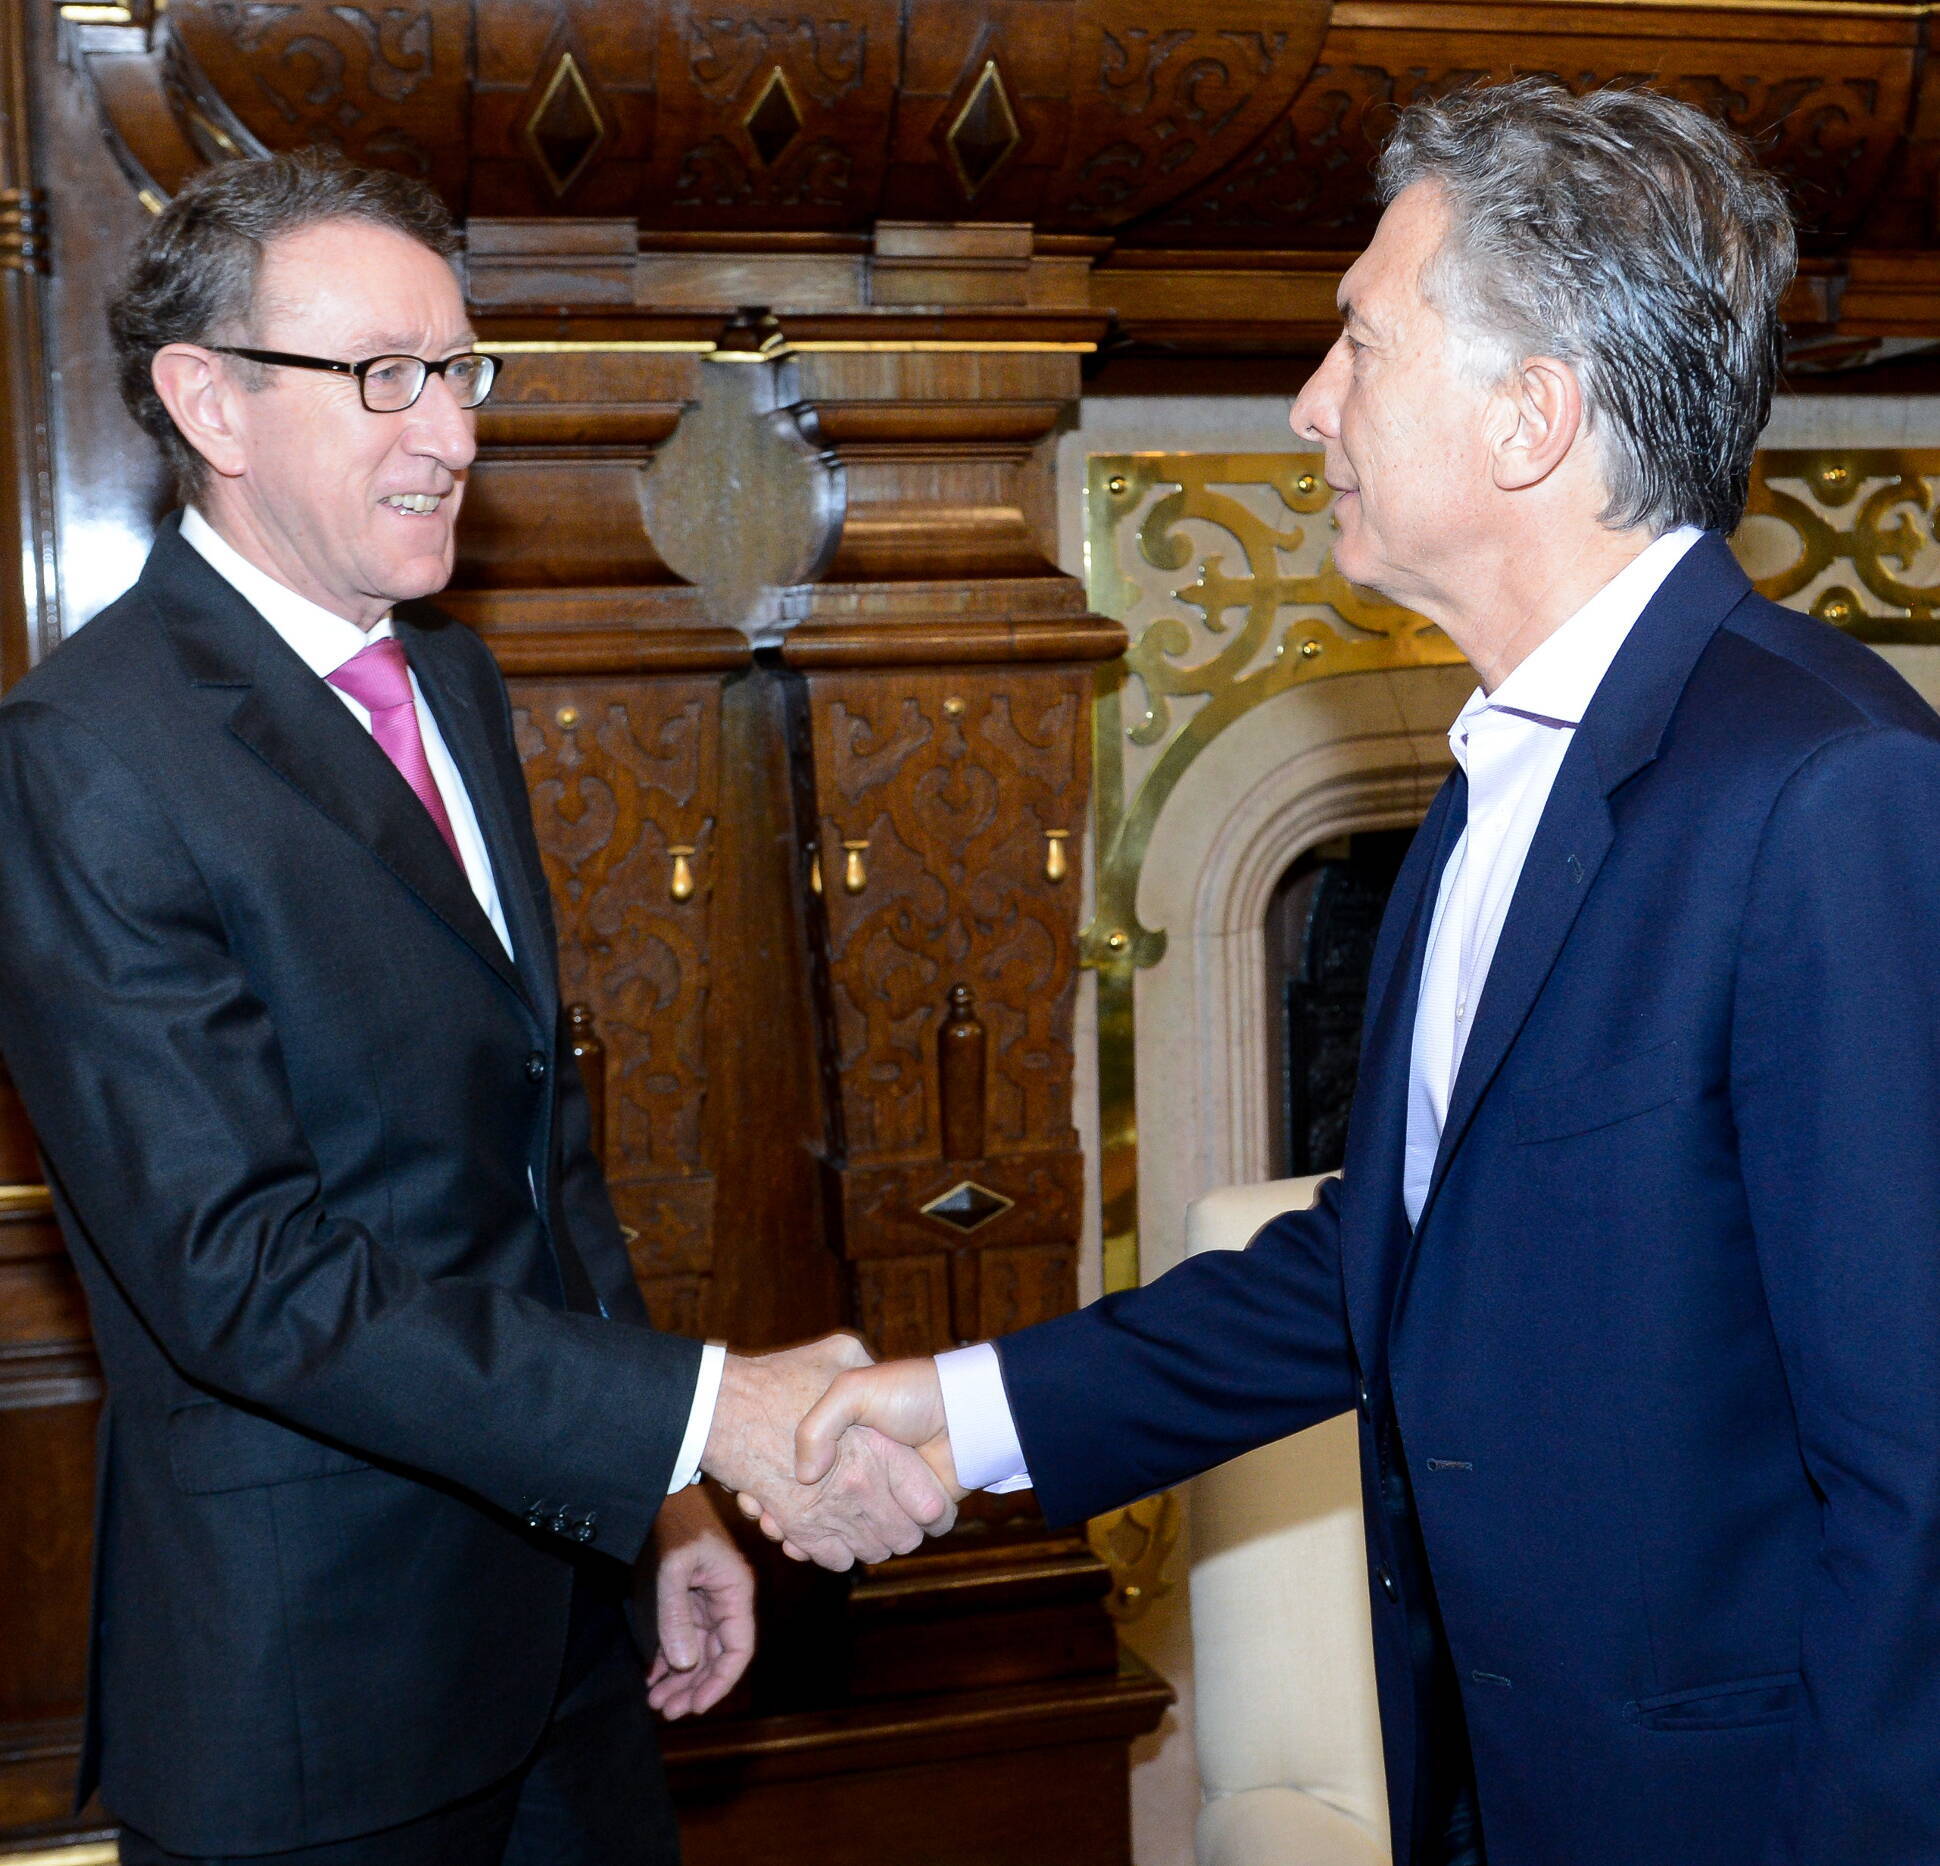 El presidente Macri recibió al director ejecutivo del banco Credite Agricole